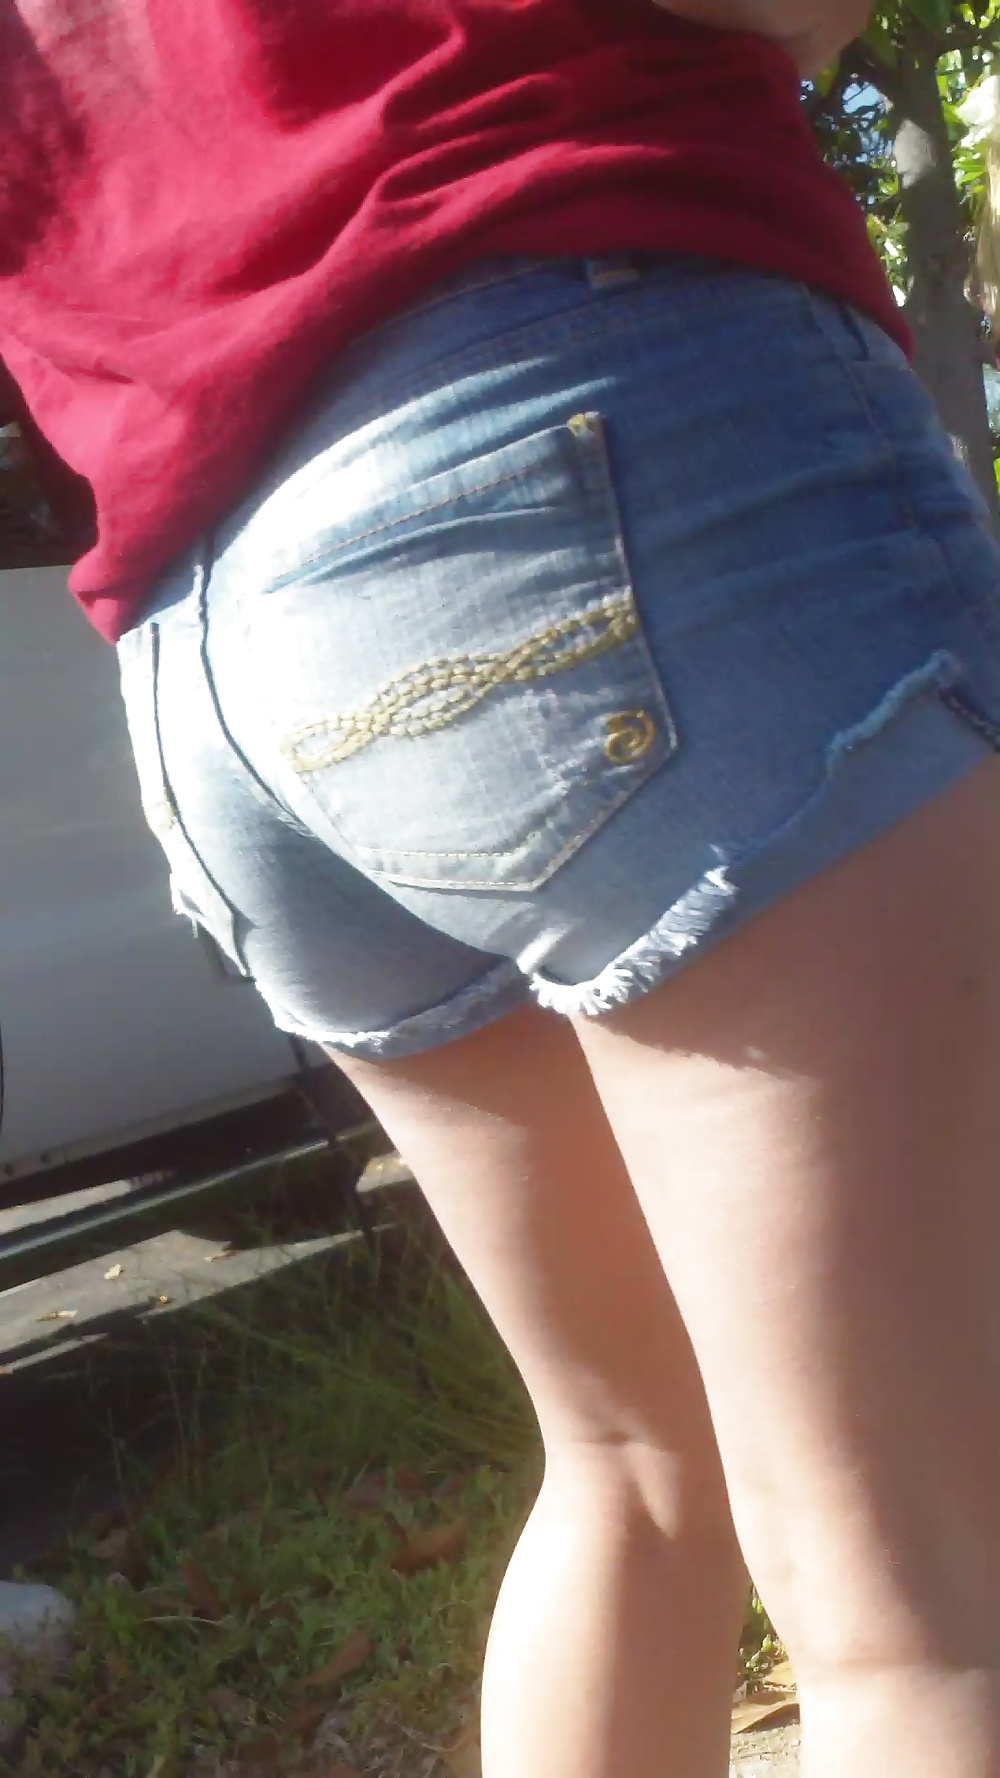 Popular teen girls ass & butt in jeans part 4  #26741766